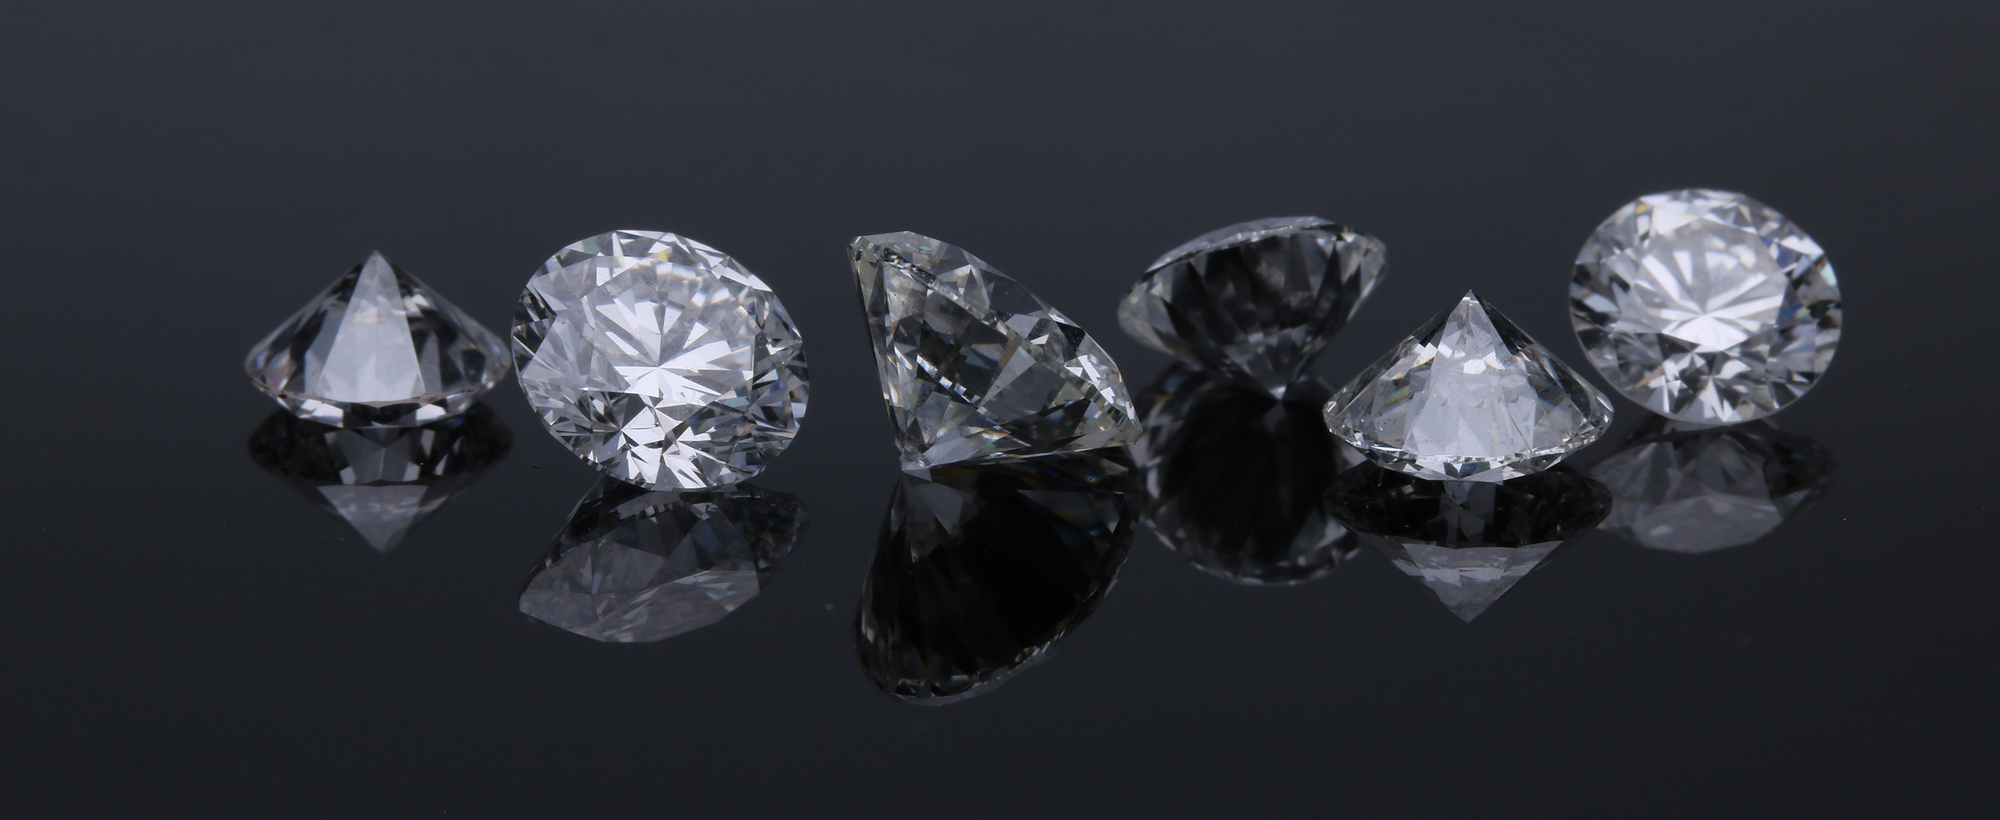 Lab Grown Diamonds - The Future of Diamond Jewelry